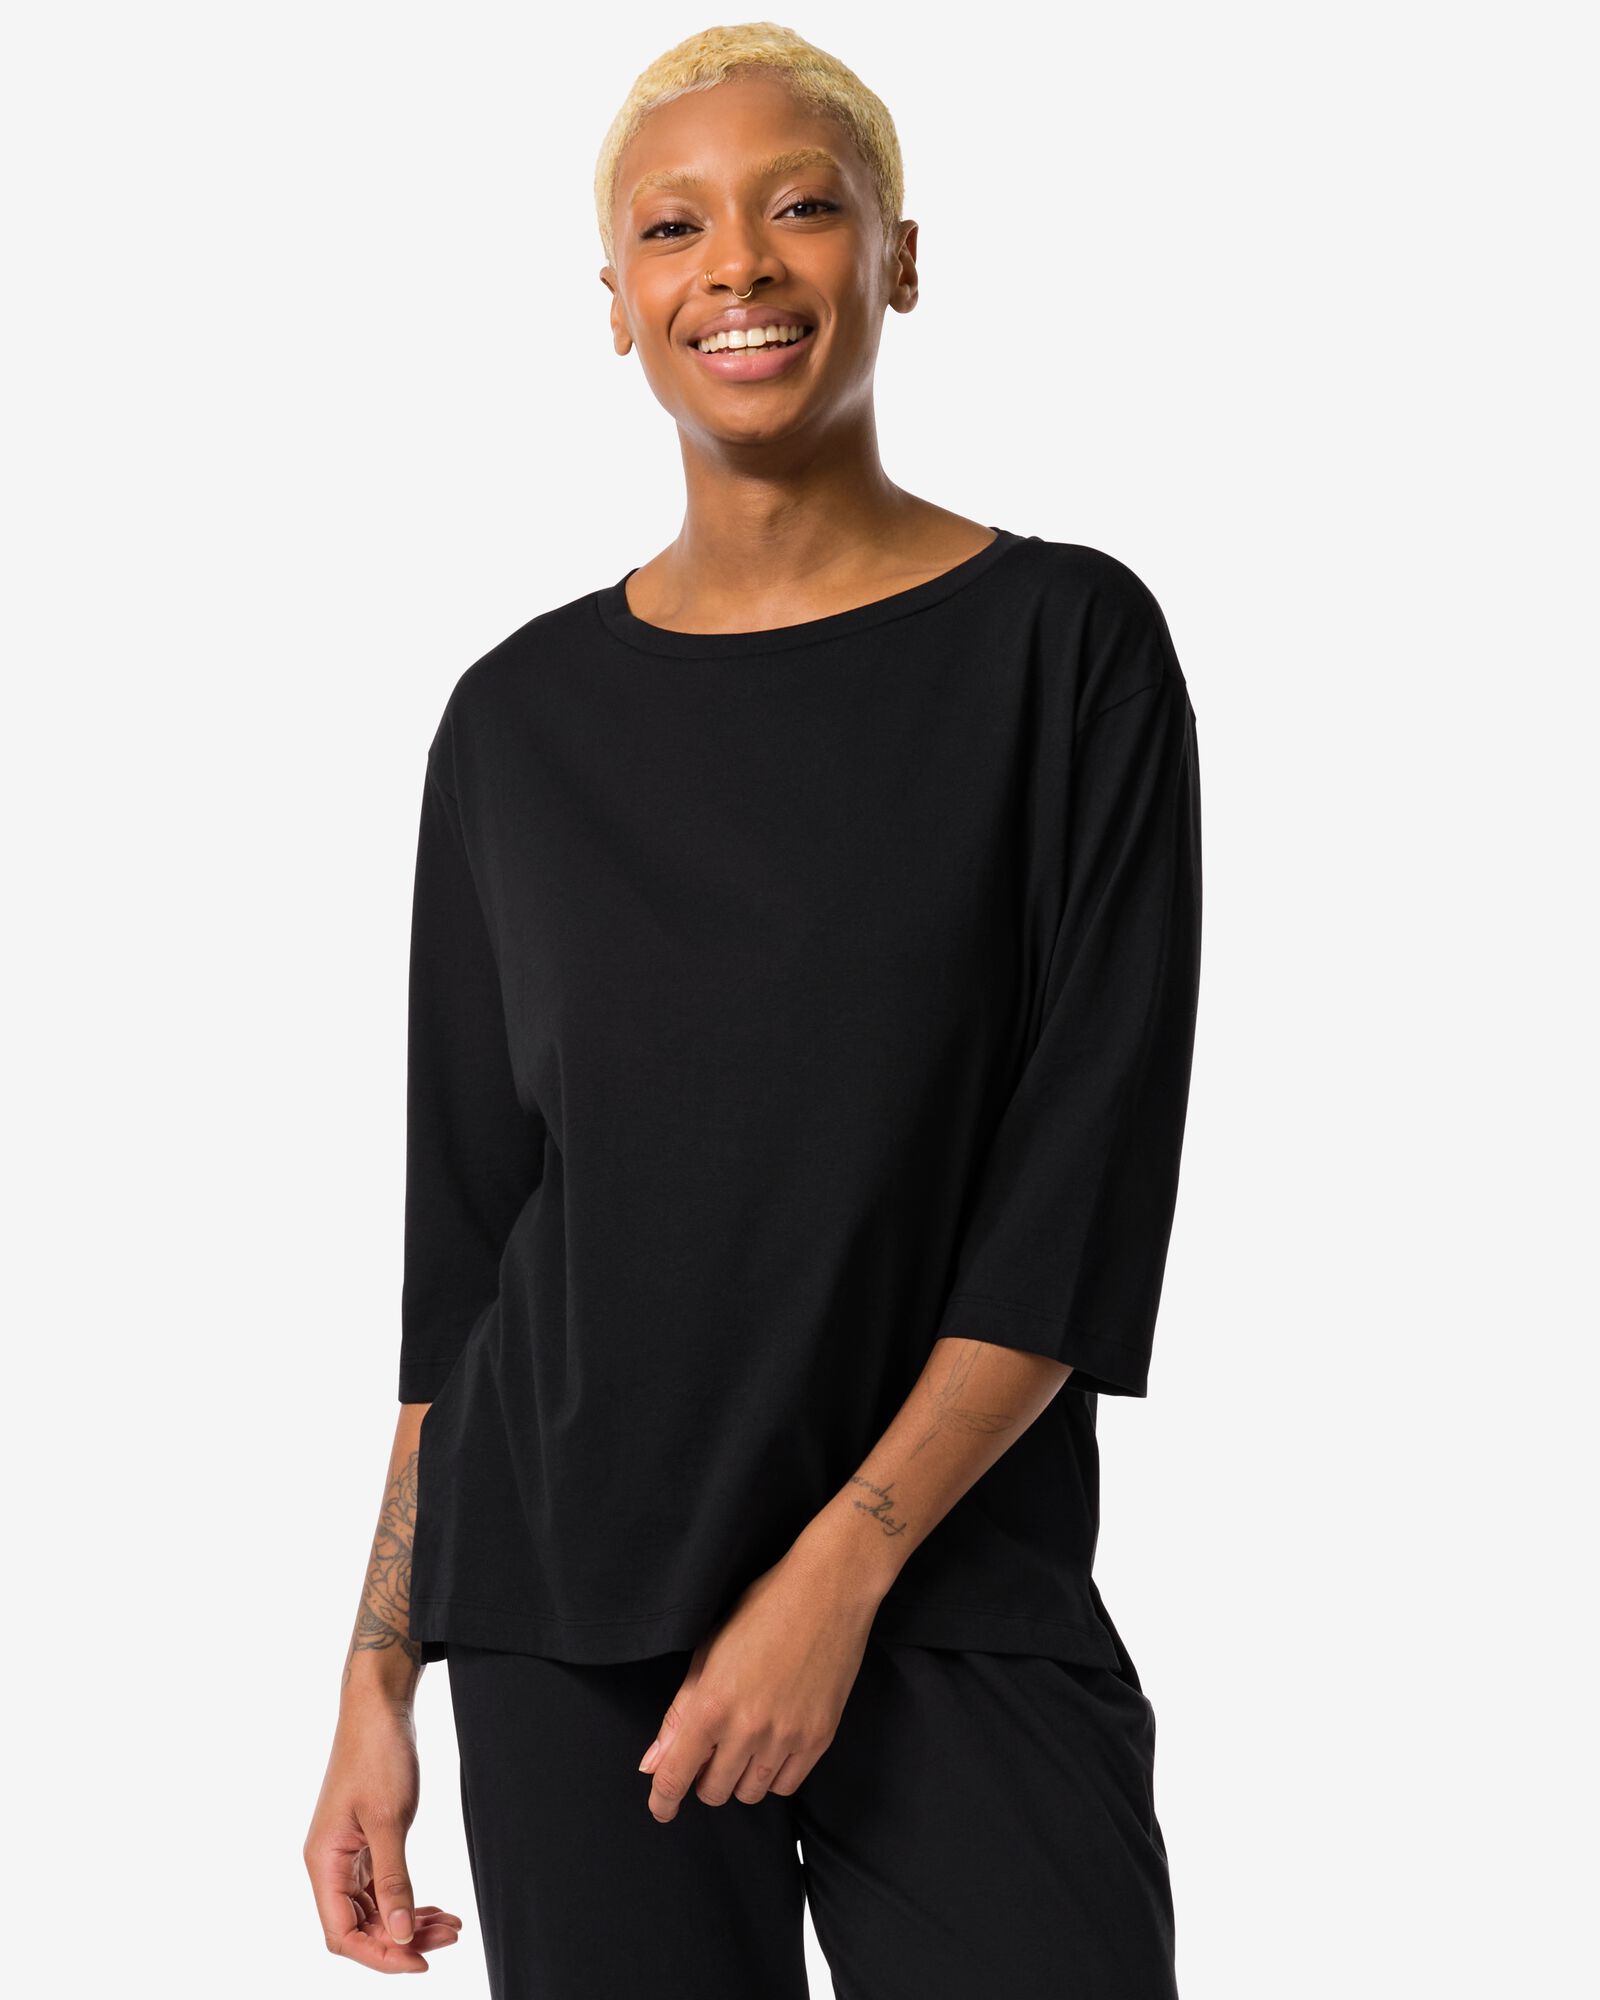 damesnachtshirt met katoen  zwart M - 23480062 - HEMA